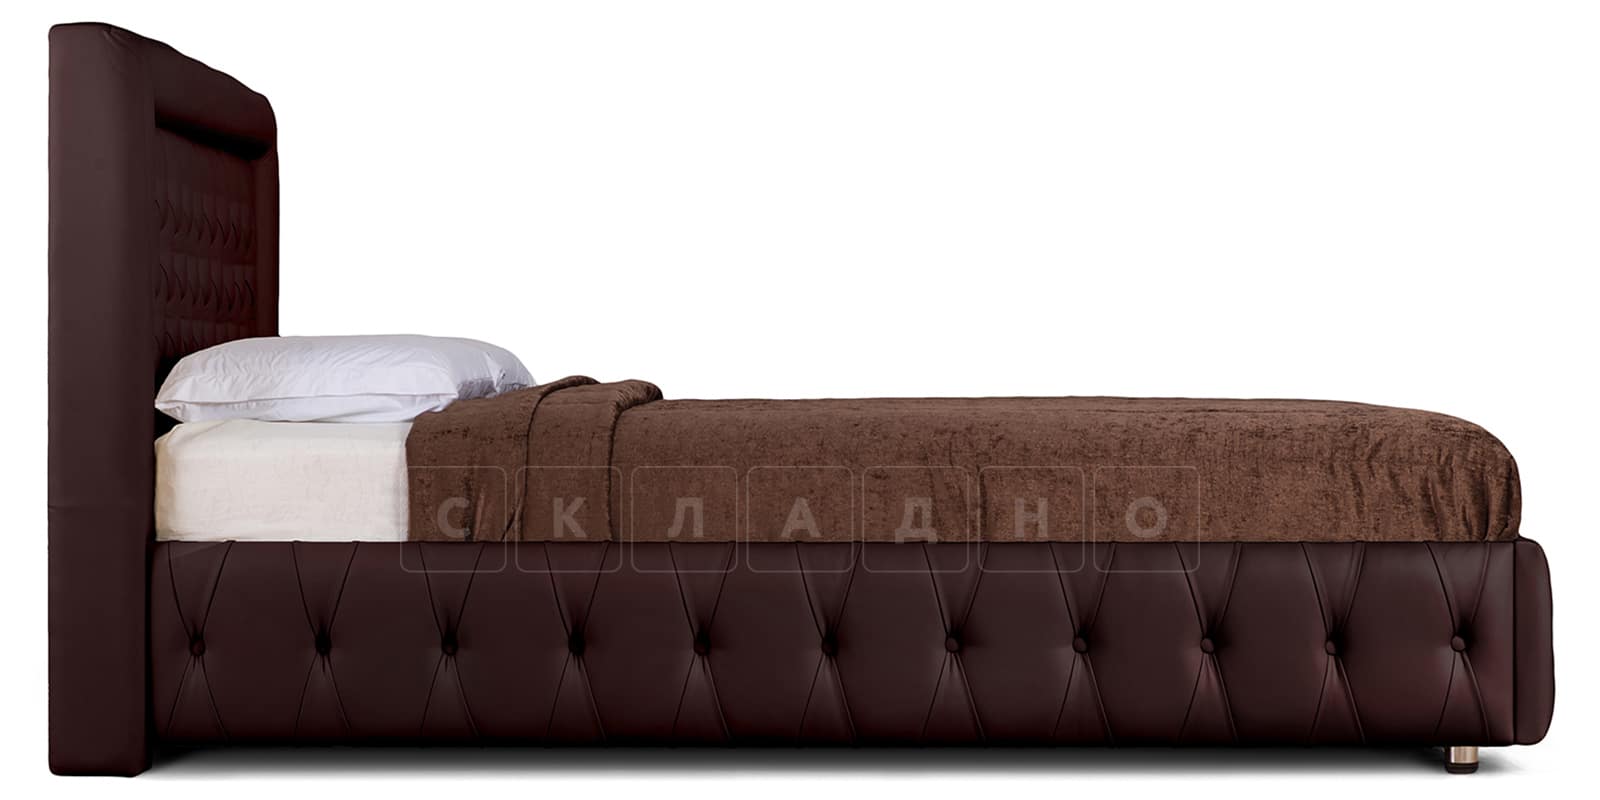 Мягкая кровать Малибу 160см экокожа шоколадного цвета вариант 7 фото 3 | интернет-магазин Складно